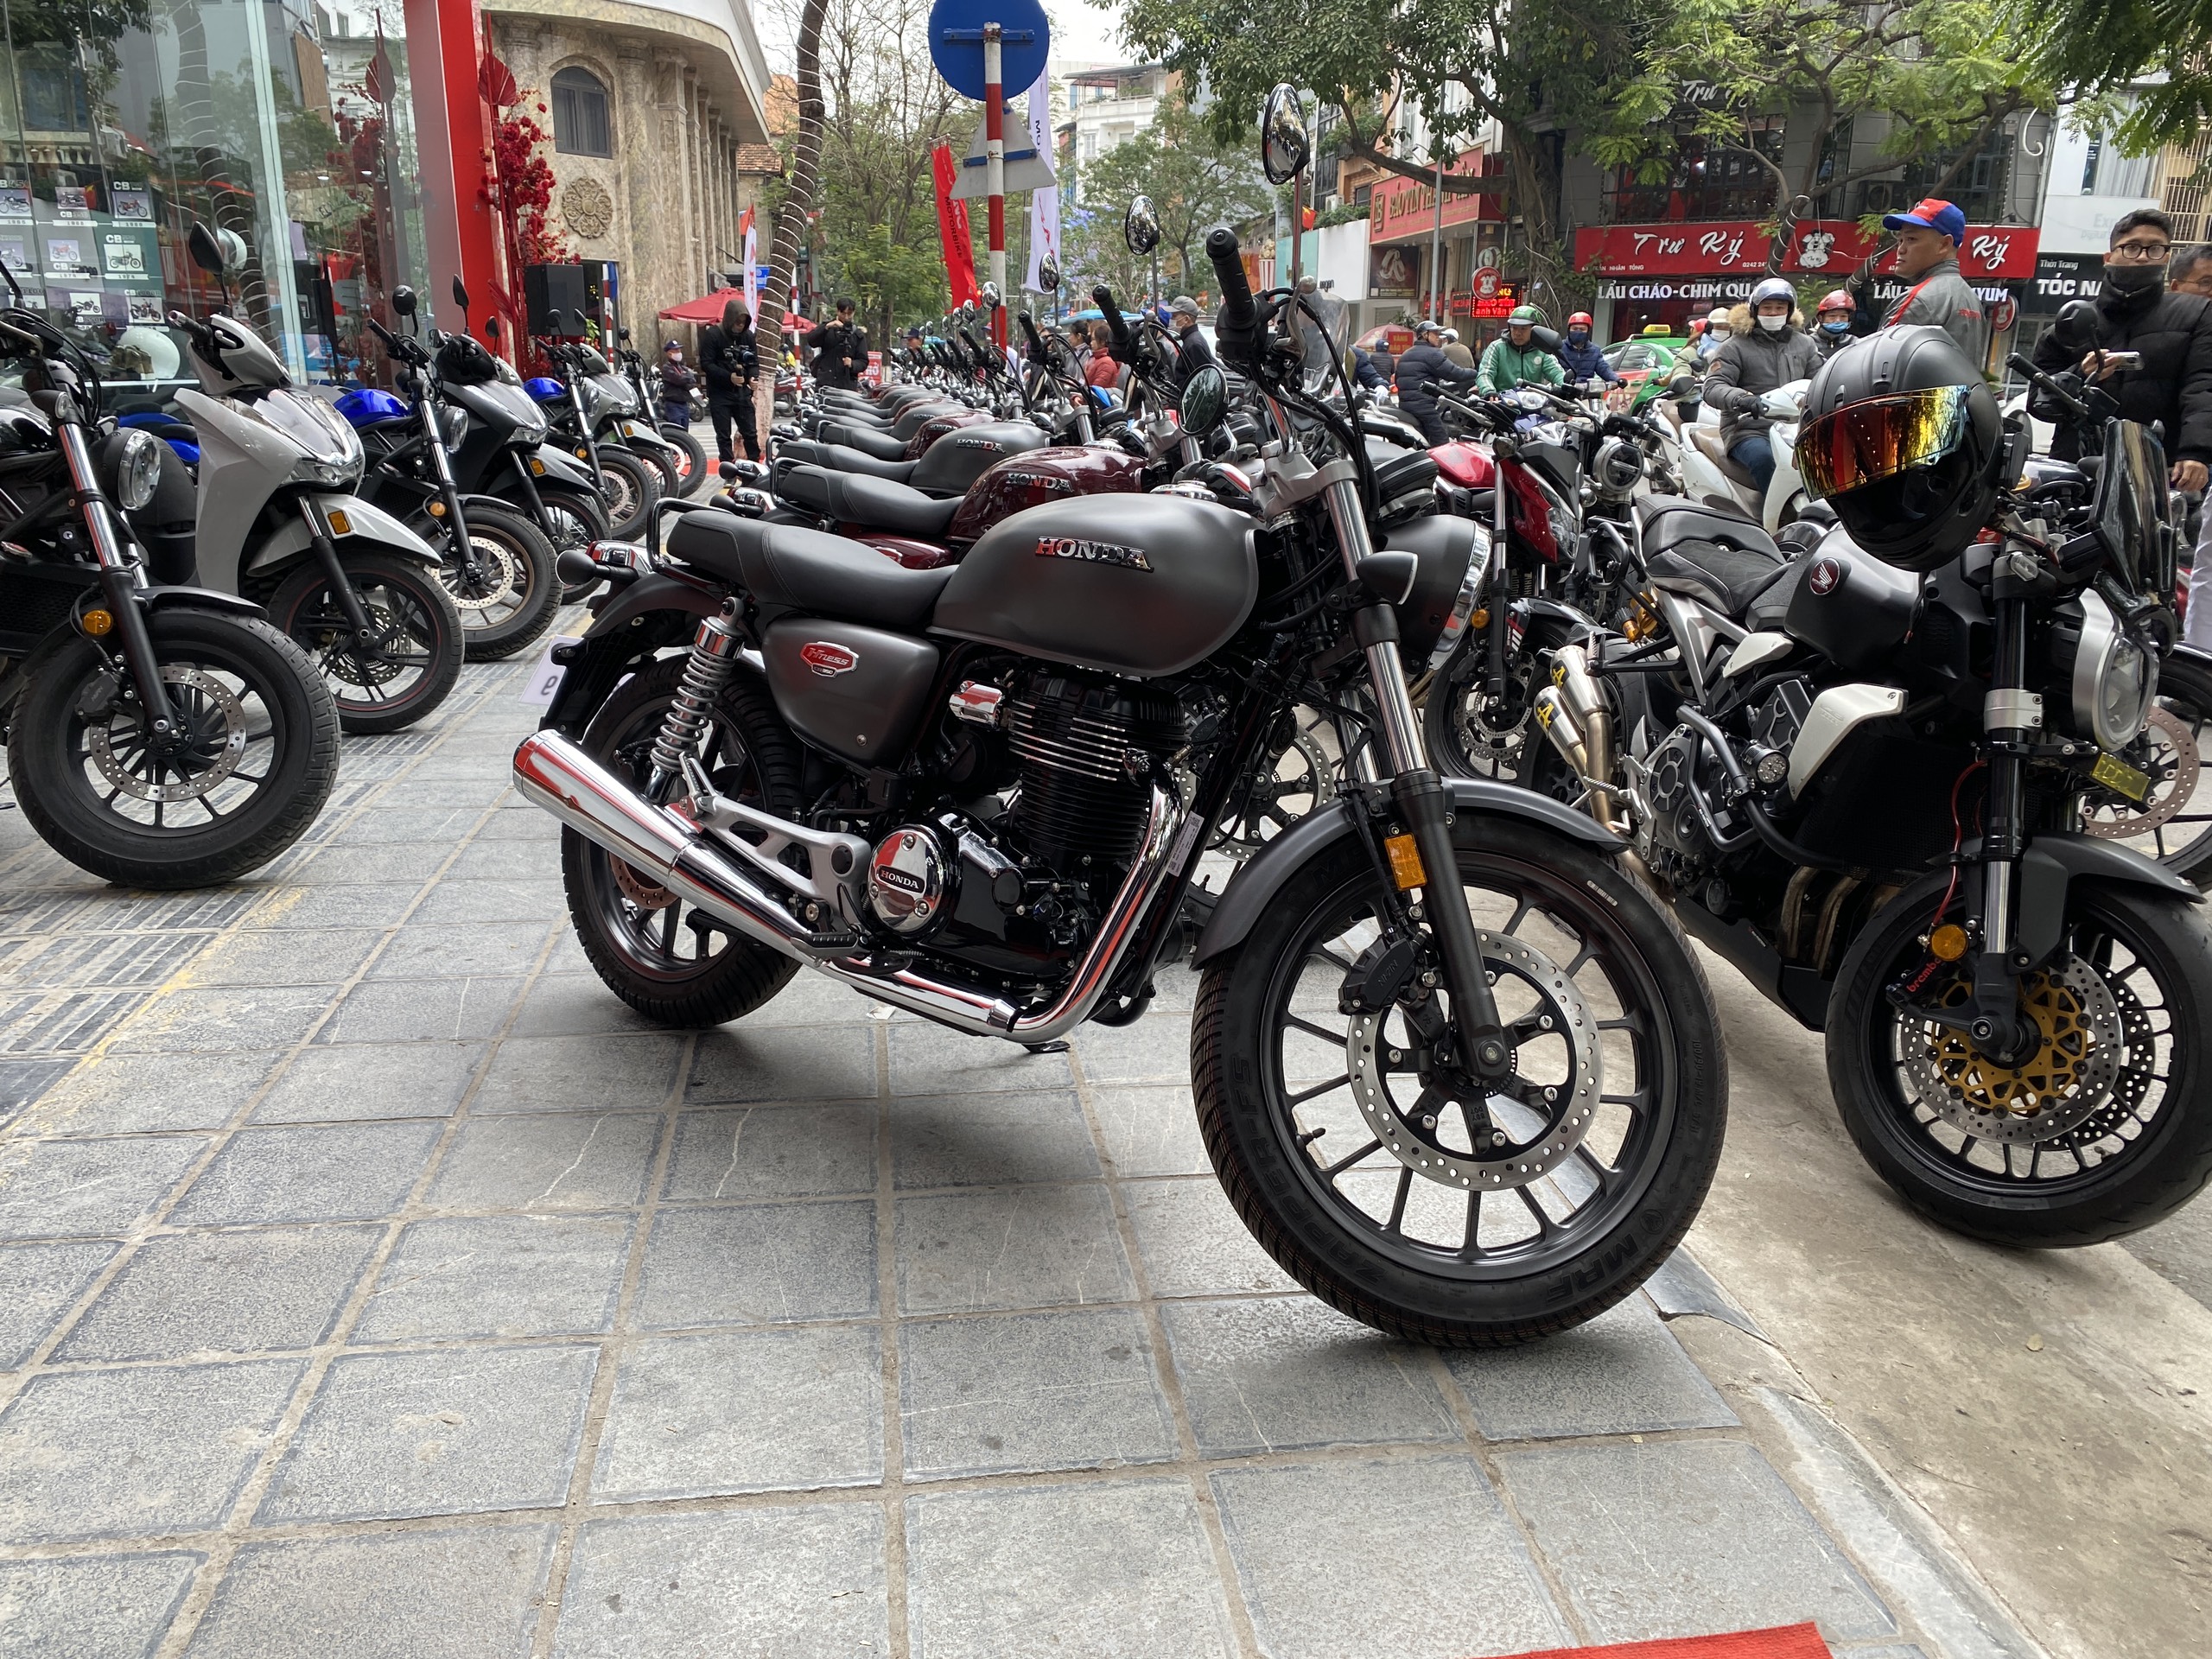 Chi tiết Honda CB350 H’ness vừa ra mắt tại Việt Nam: Thiết kế đẹp, trang bị ổn, giá từ 130 triệu honda-cb350-hness-10.jpg